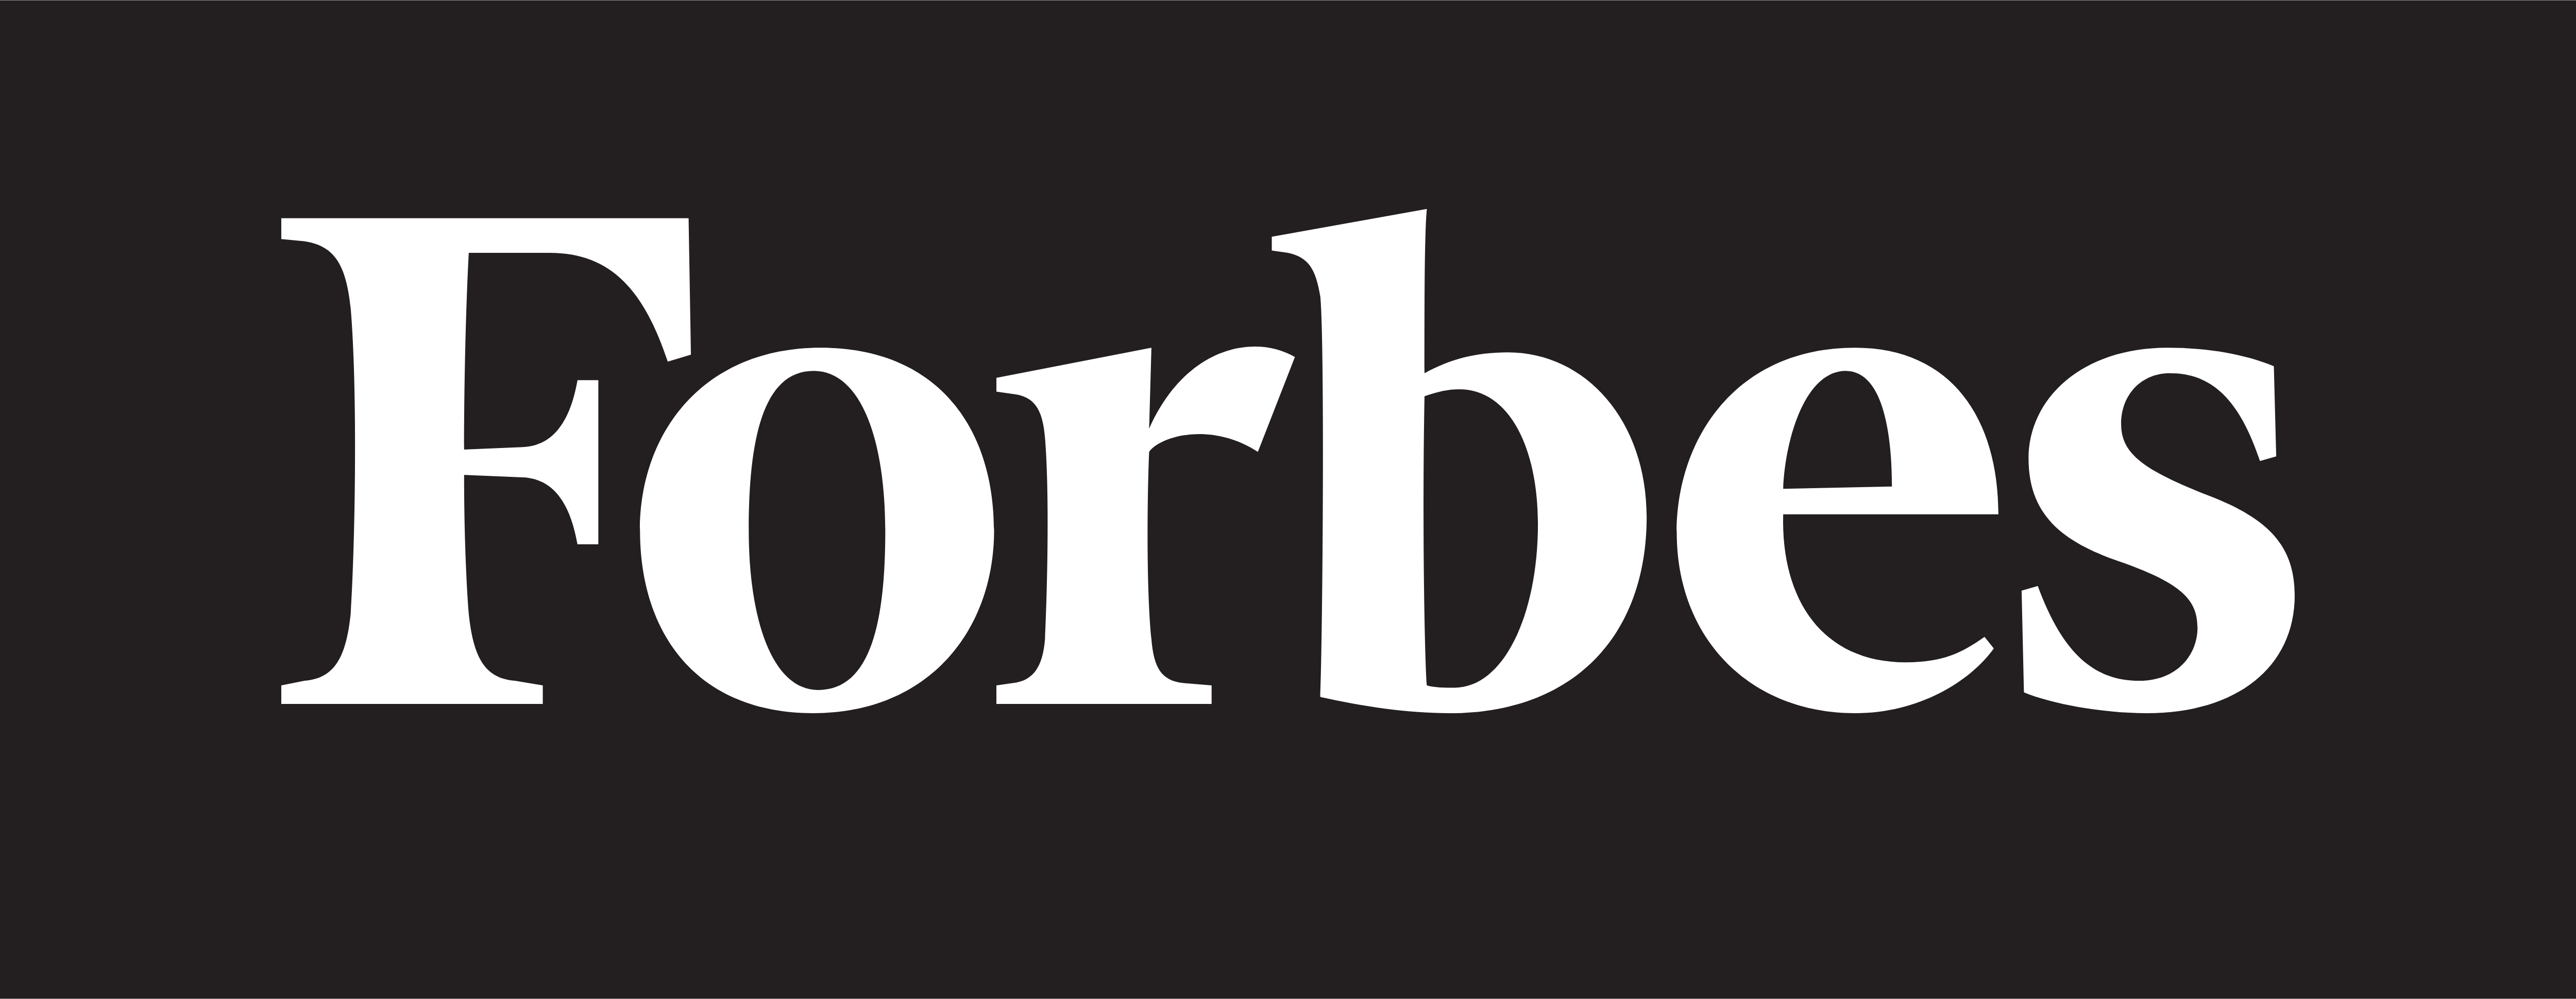 Forbes – Logos Download